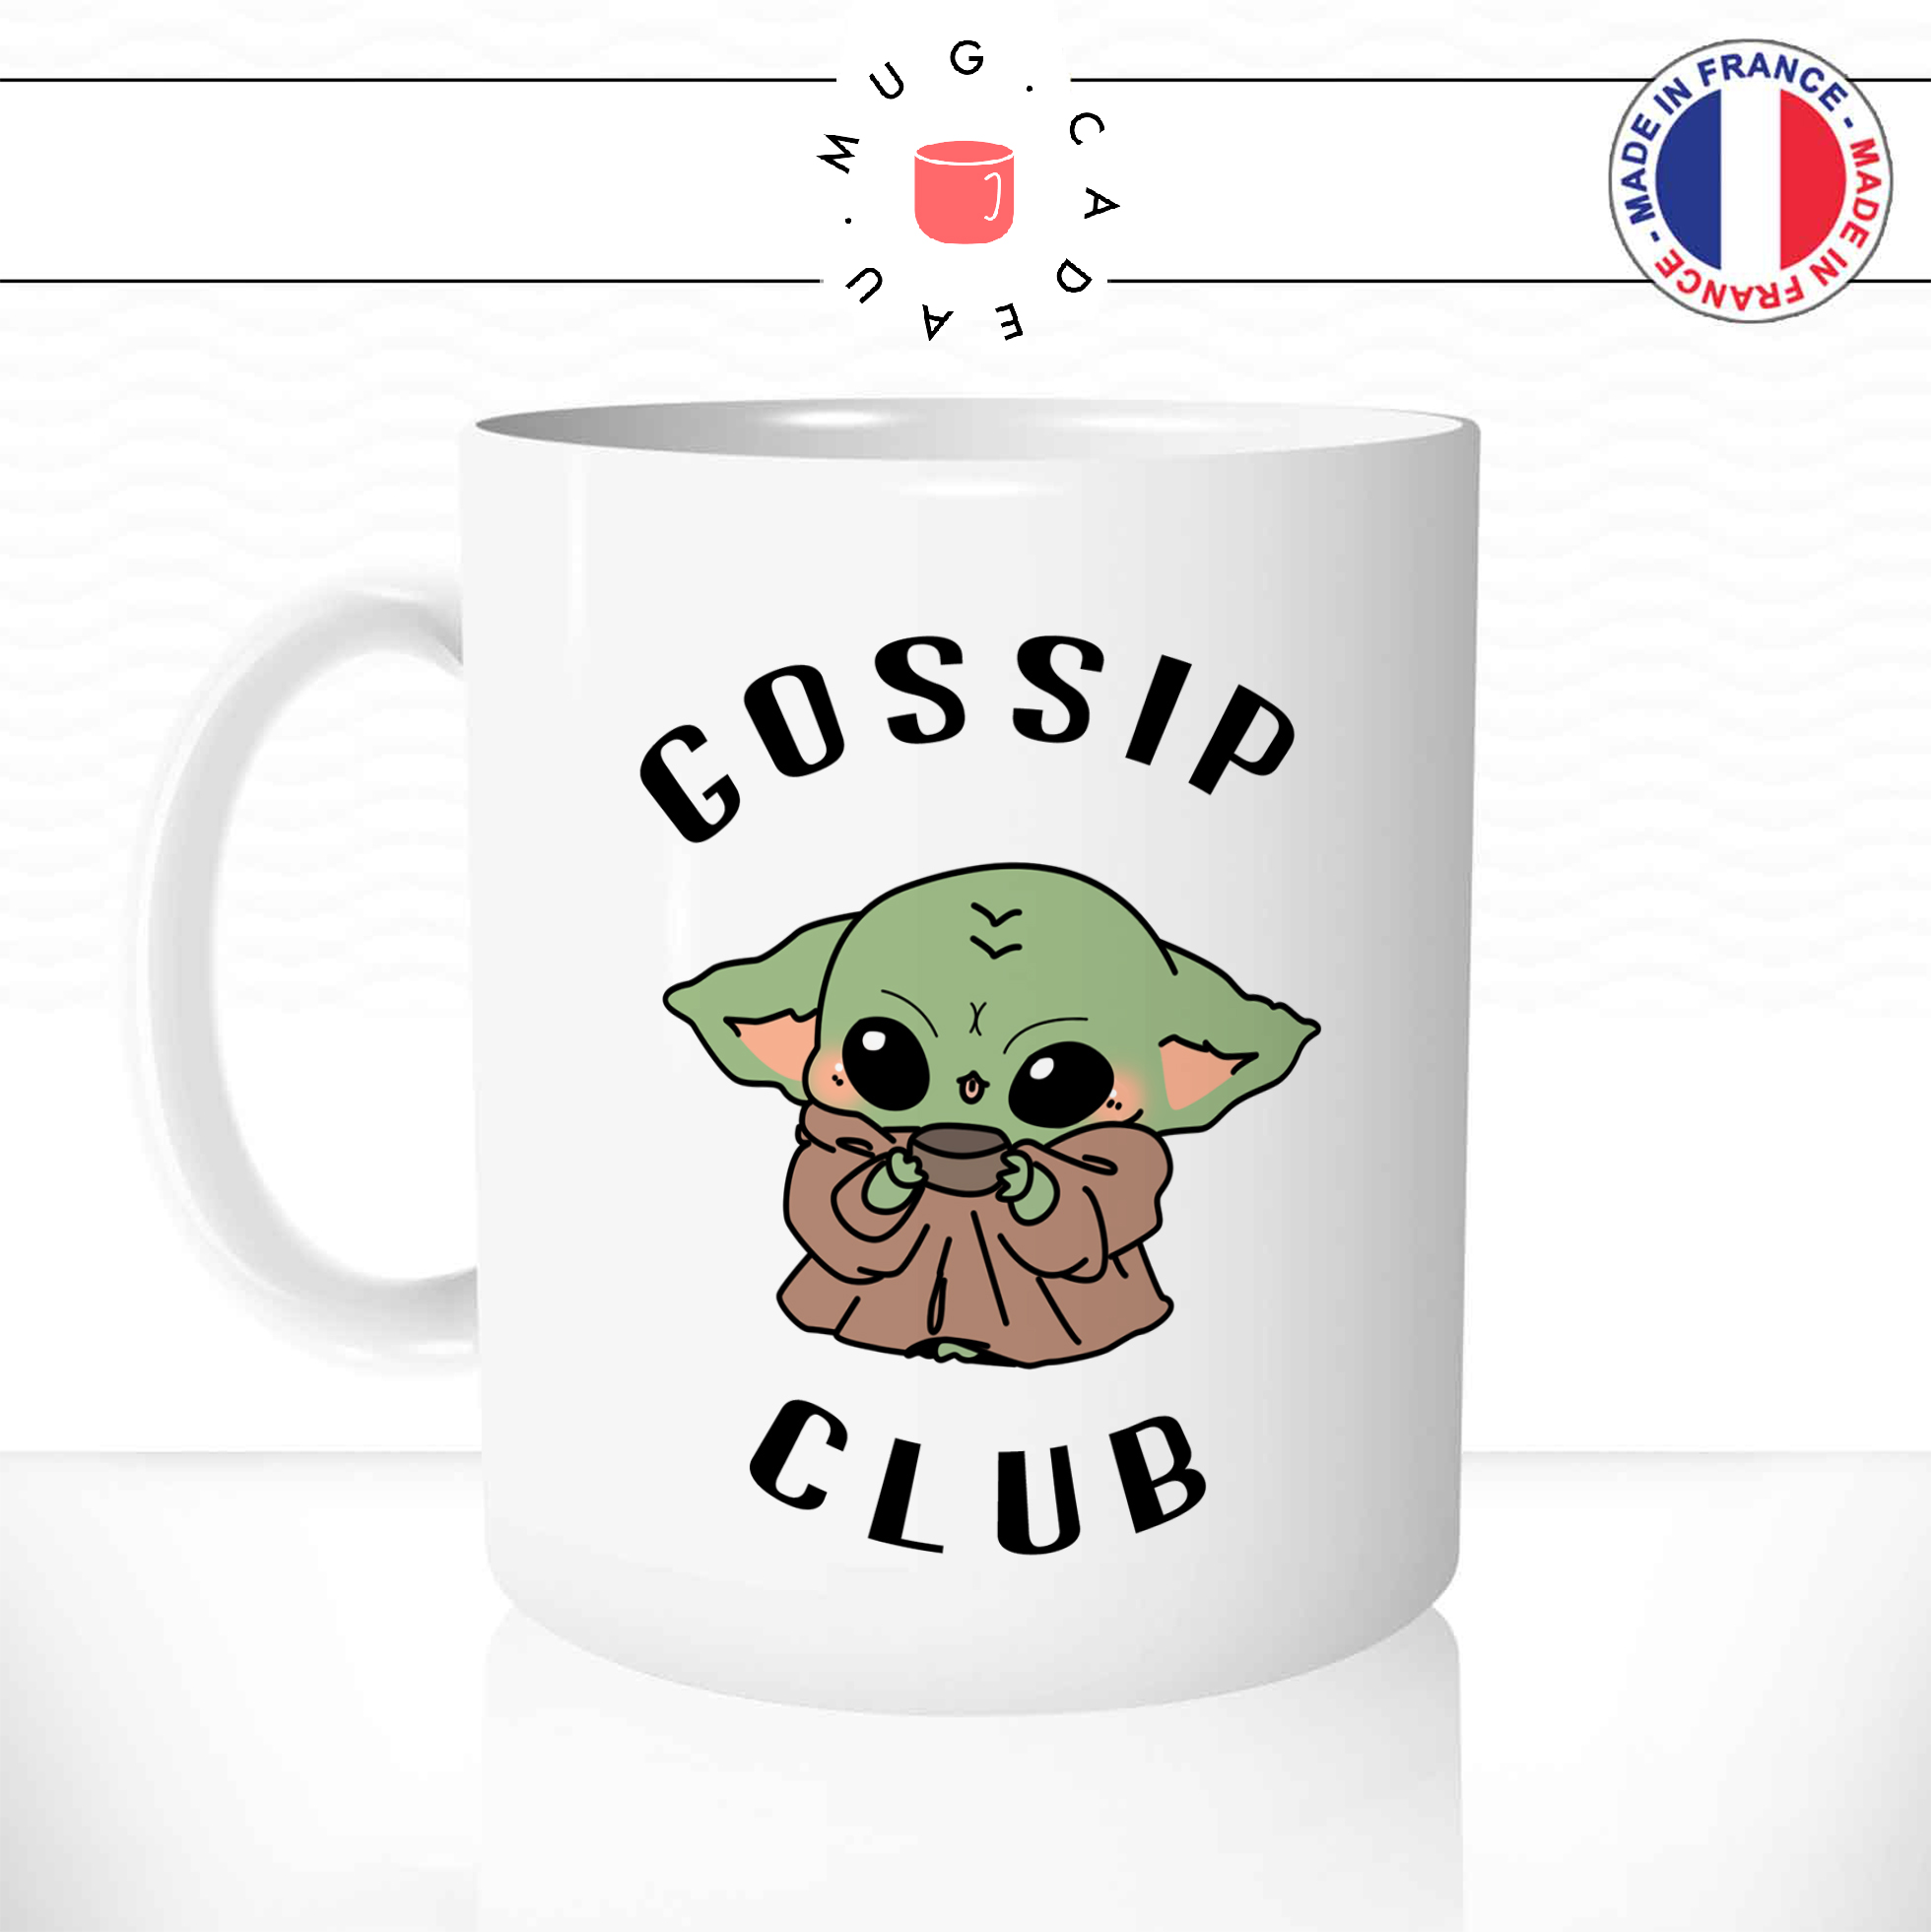 Mug Gossip Club